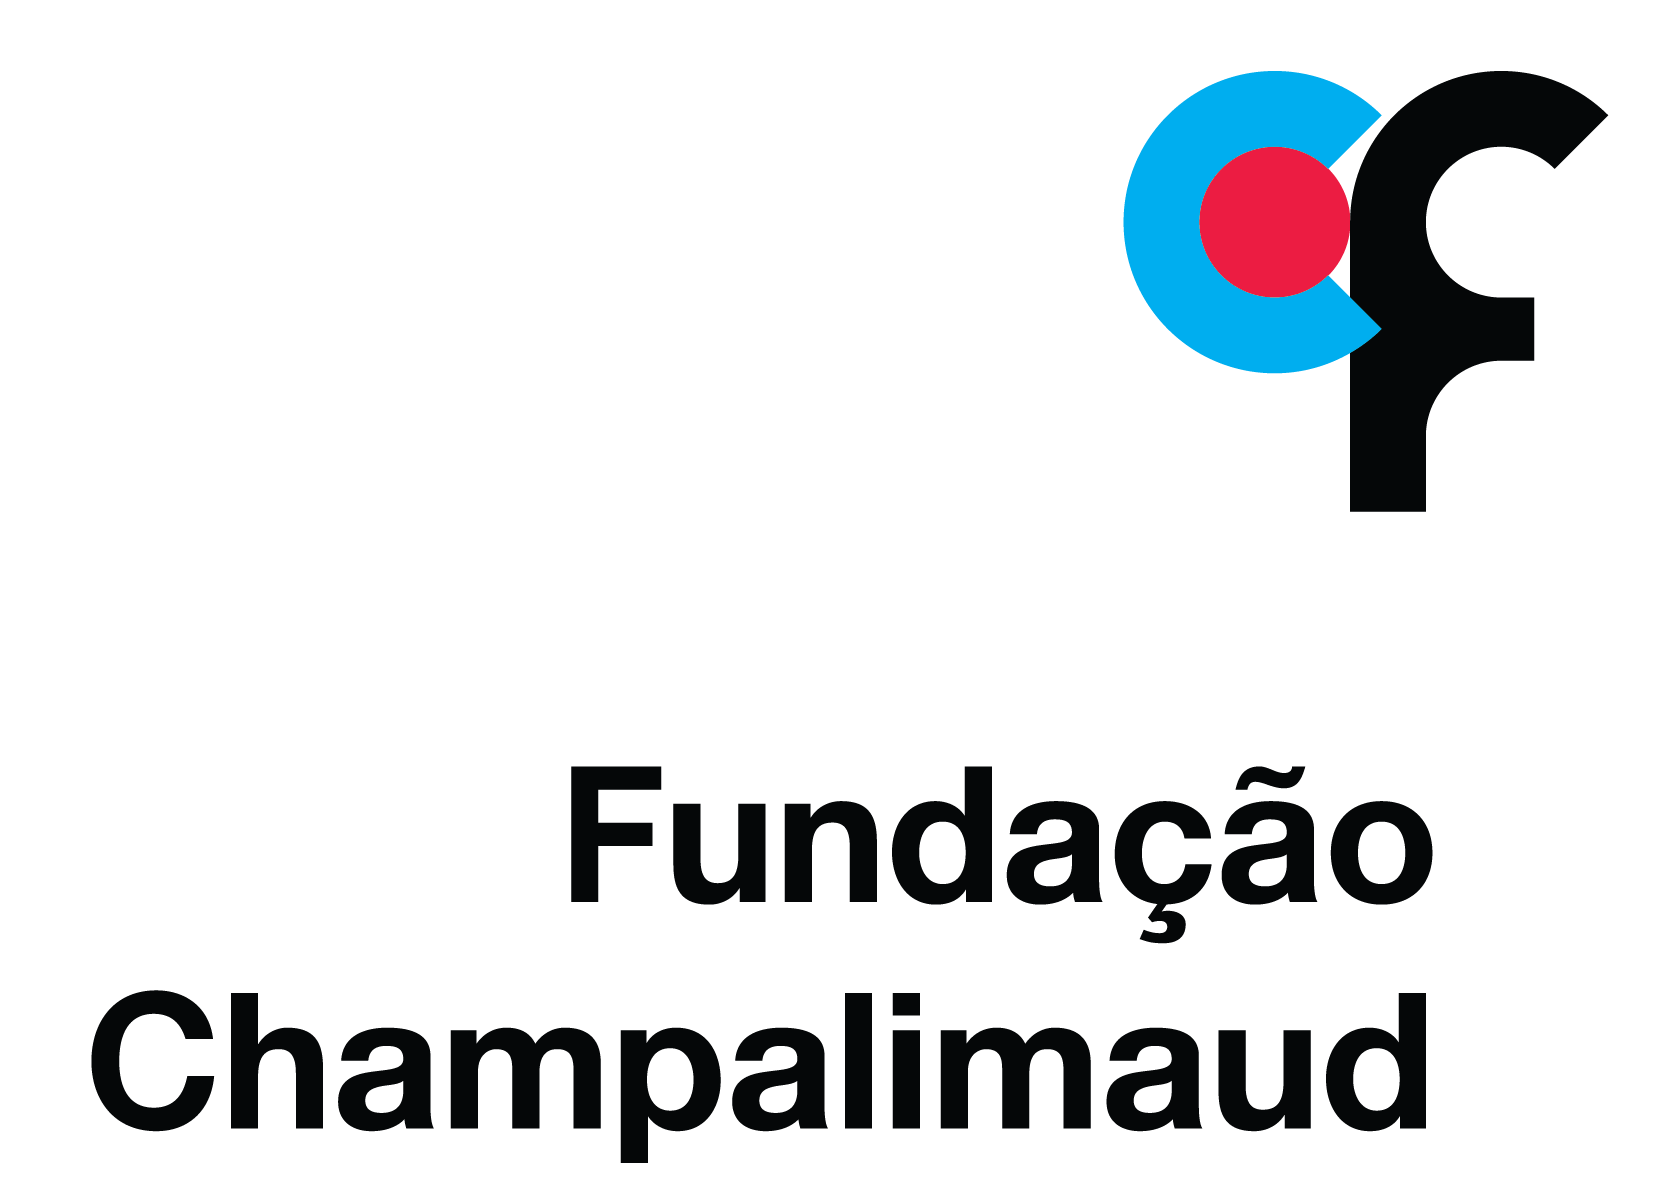 Champalimaud Research